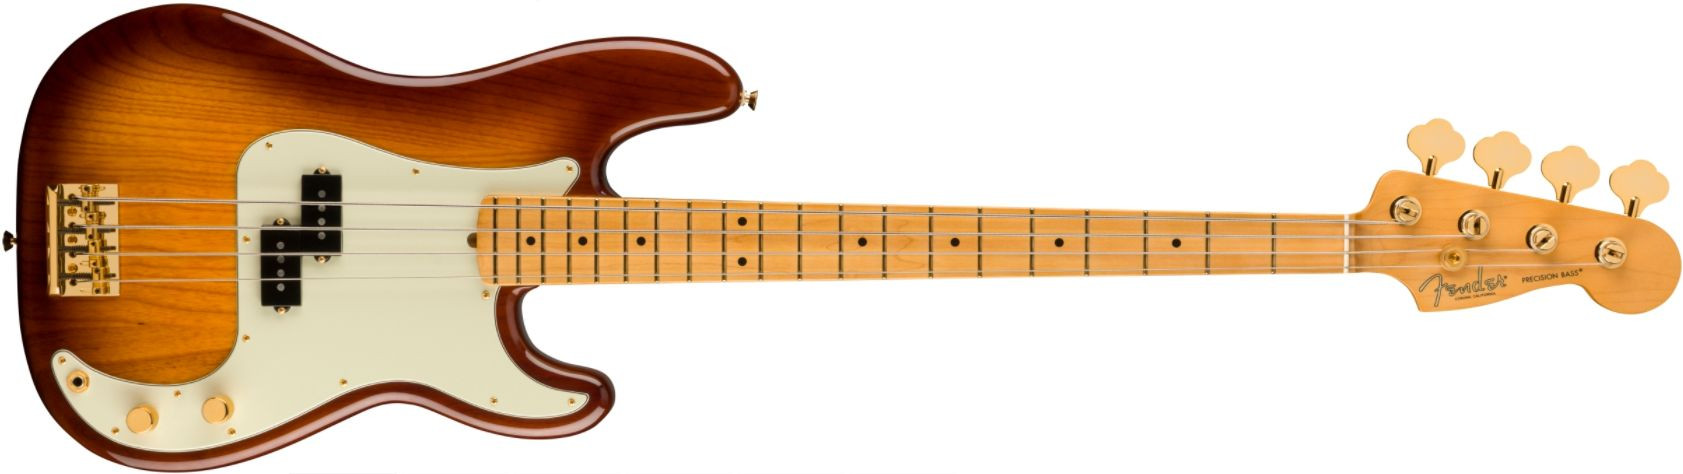 Hlavní obrázek PB modely FENDER 75th Anniversary Commemorative Precision Bass 2-Color Bourbon Burst Maple